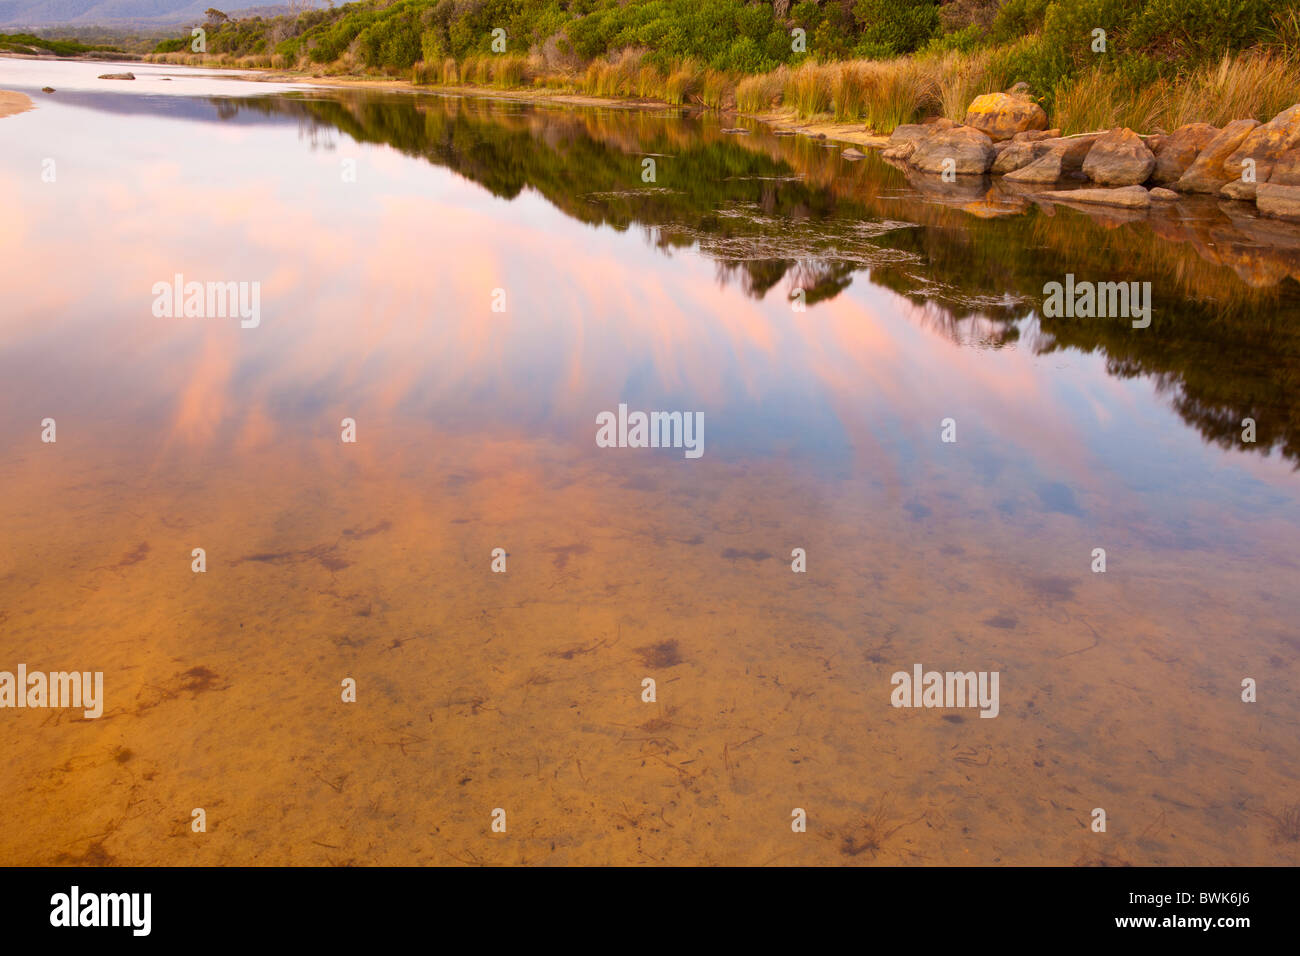 Am frühen Morgen Reflexionen in der Lagune bei Lagunen Strand, Kette von Lagunen nördlich von Bicheno an der Ostküste Tasmaniens Stockfoto